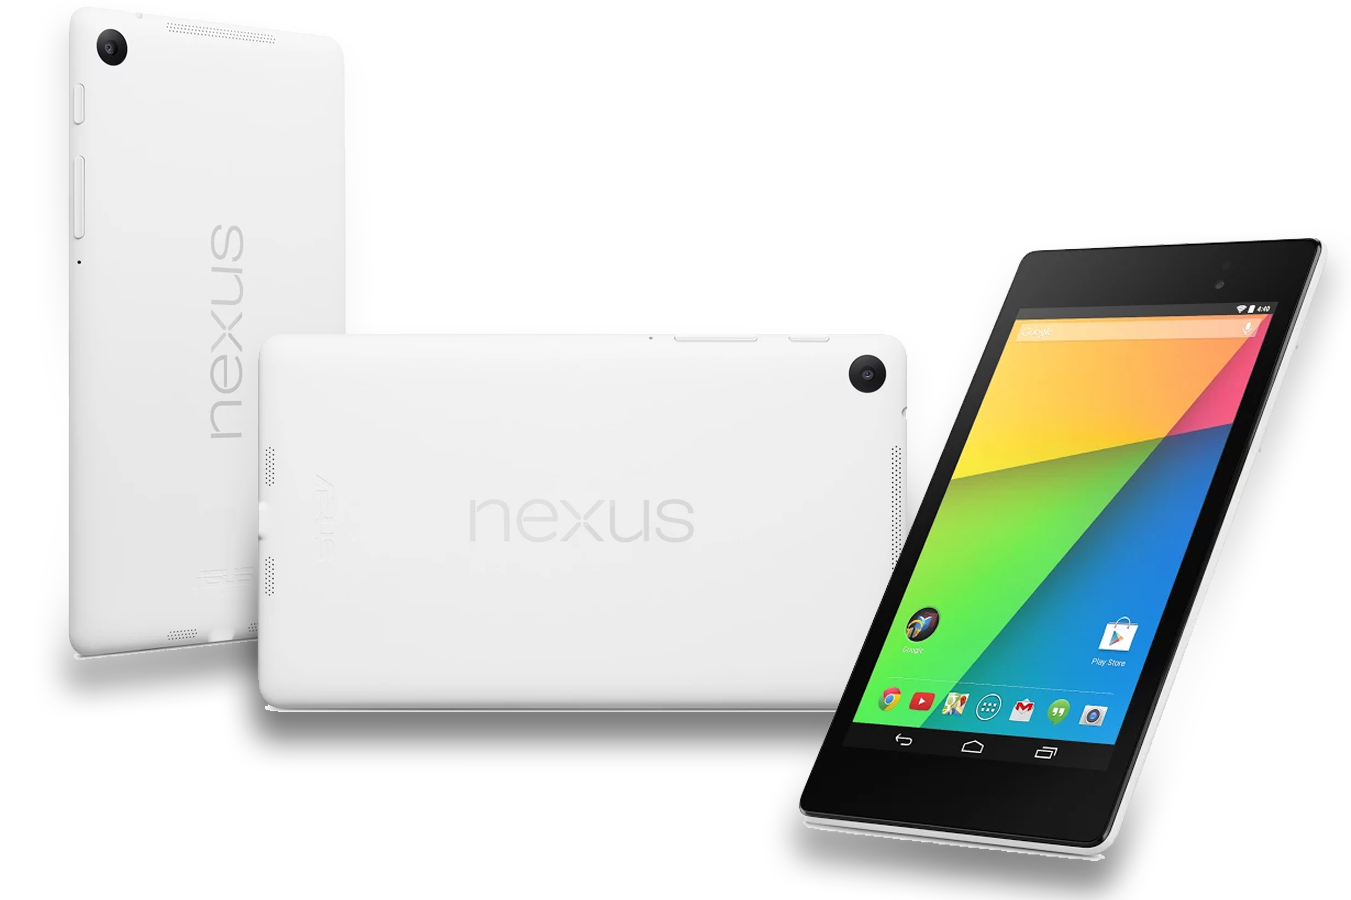 Immagine pubblicata in relazione al seguente contenuto: Non Asustek ma HTC  il partner di Google per il Nexus da 8-inch | Nome immagine: news21079_Nexus-7-Second-Generation-2013_1.png